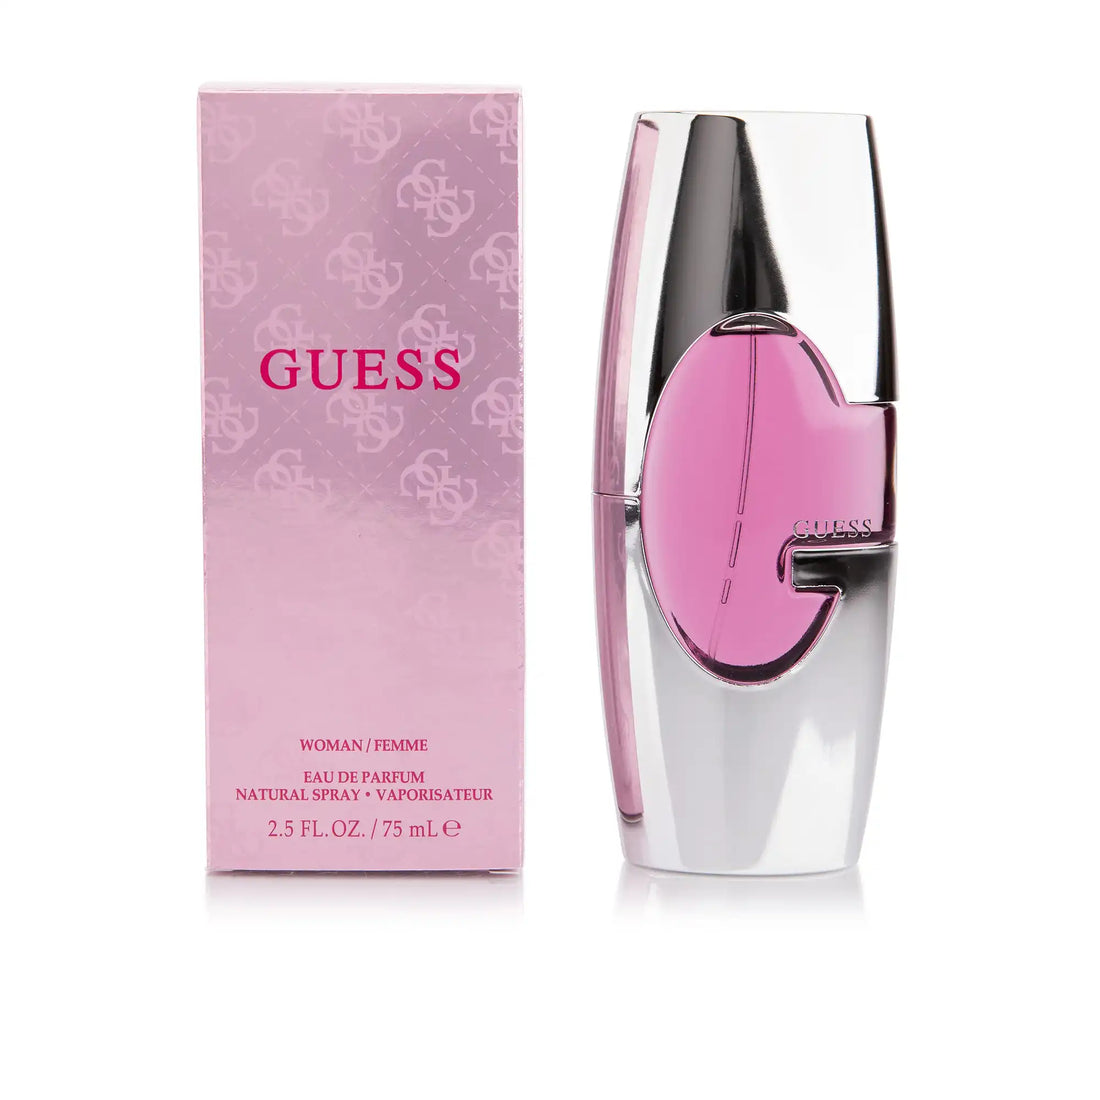 Guess for Women Eau de Parfum Spray 75ml Packaging